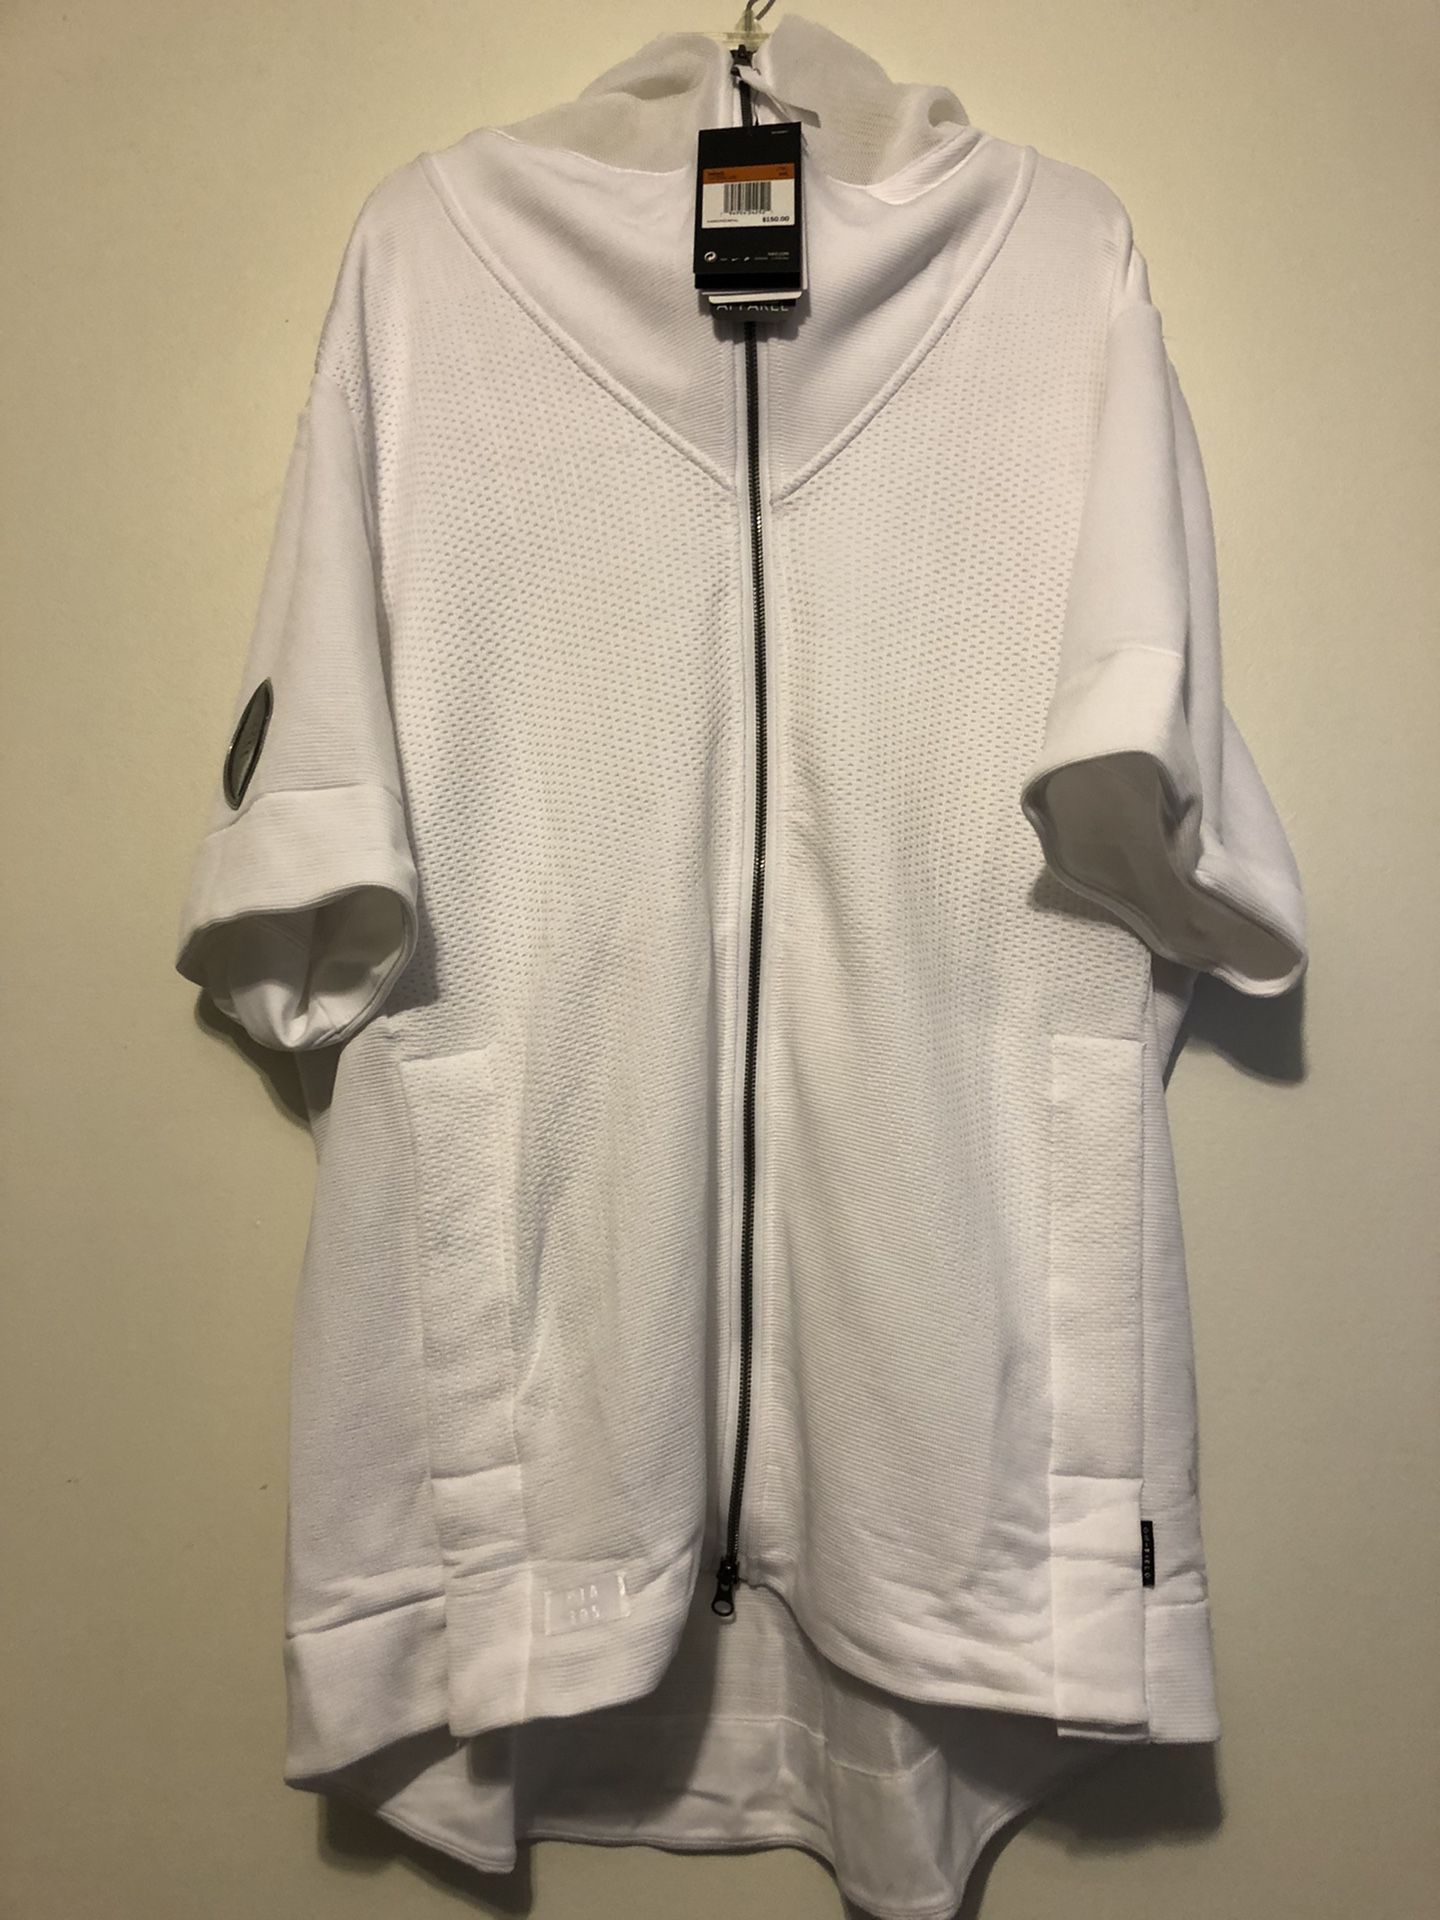 Nike Miami 305 Football Hoodie Short Sleeve Sweatshirt White DH2658-100 Size 2XL